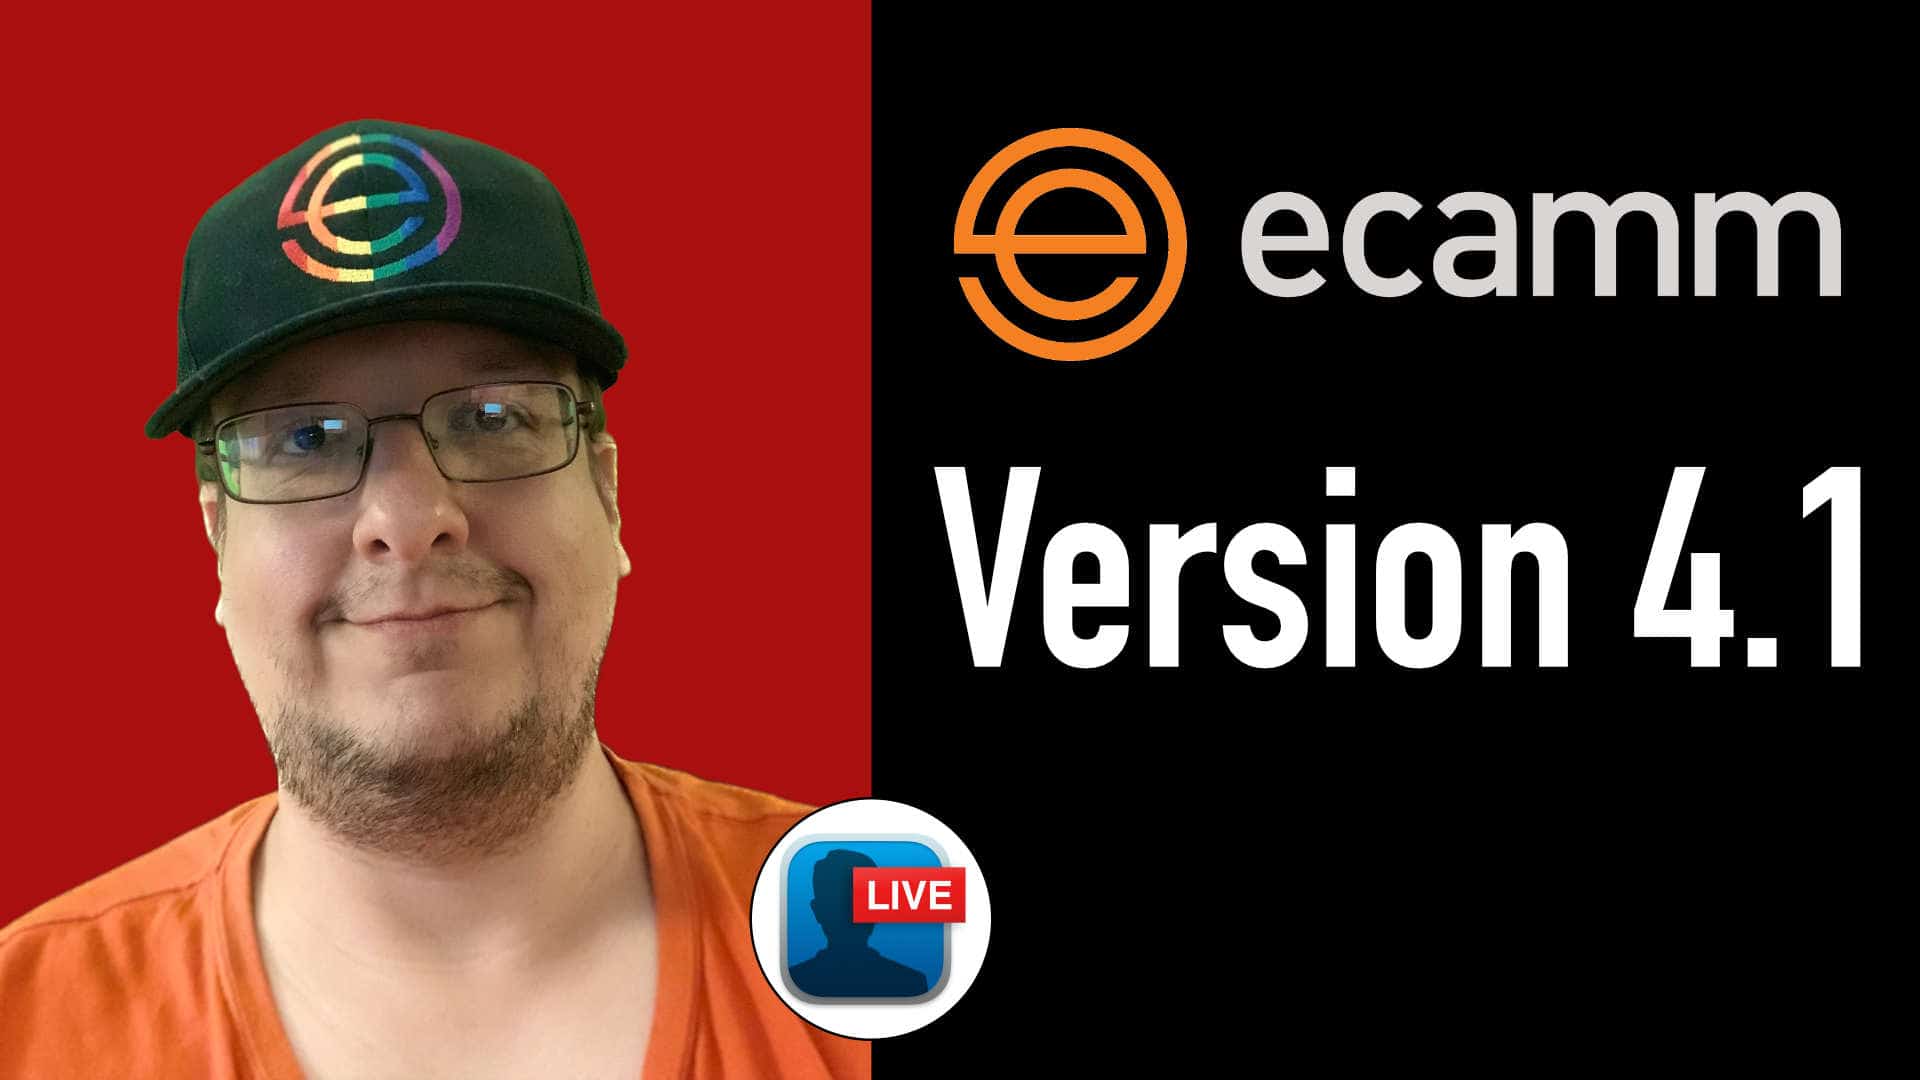 Ecamm Live 4.1 wurde veröffentlicht – das sind die neue Features die wir bekommen haben